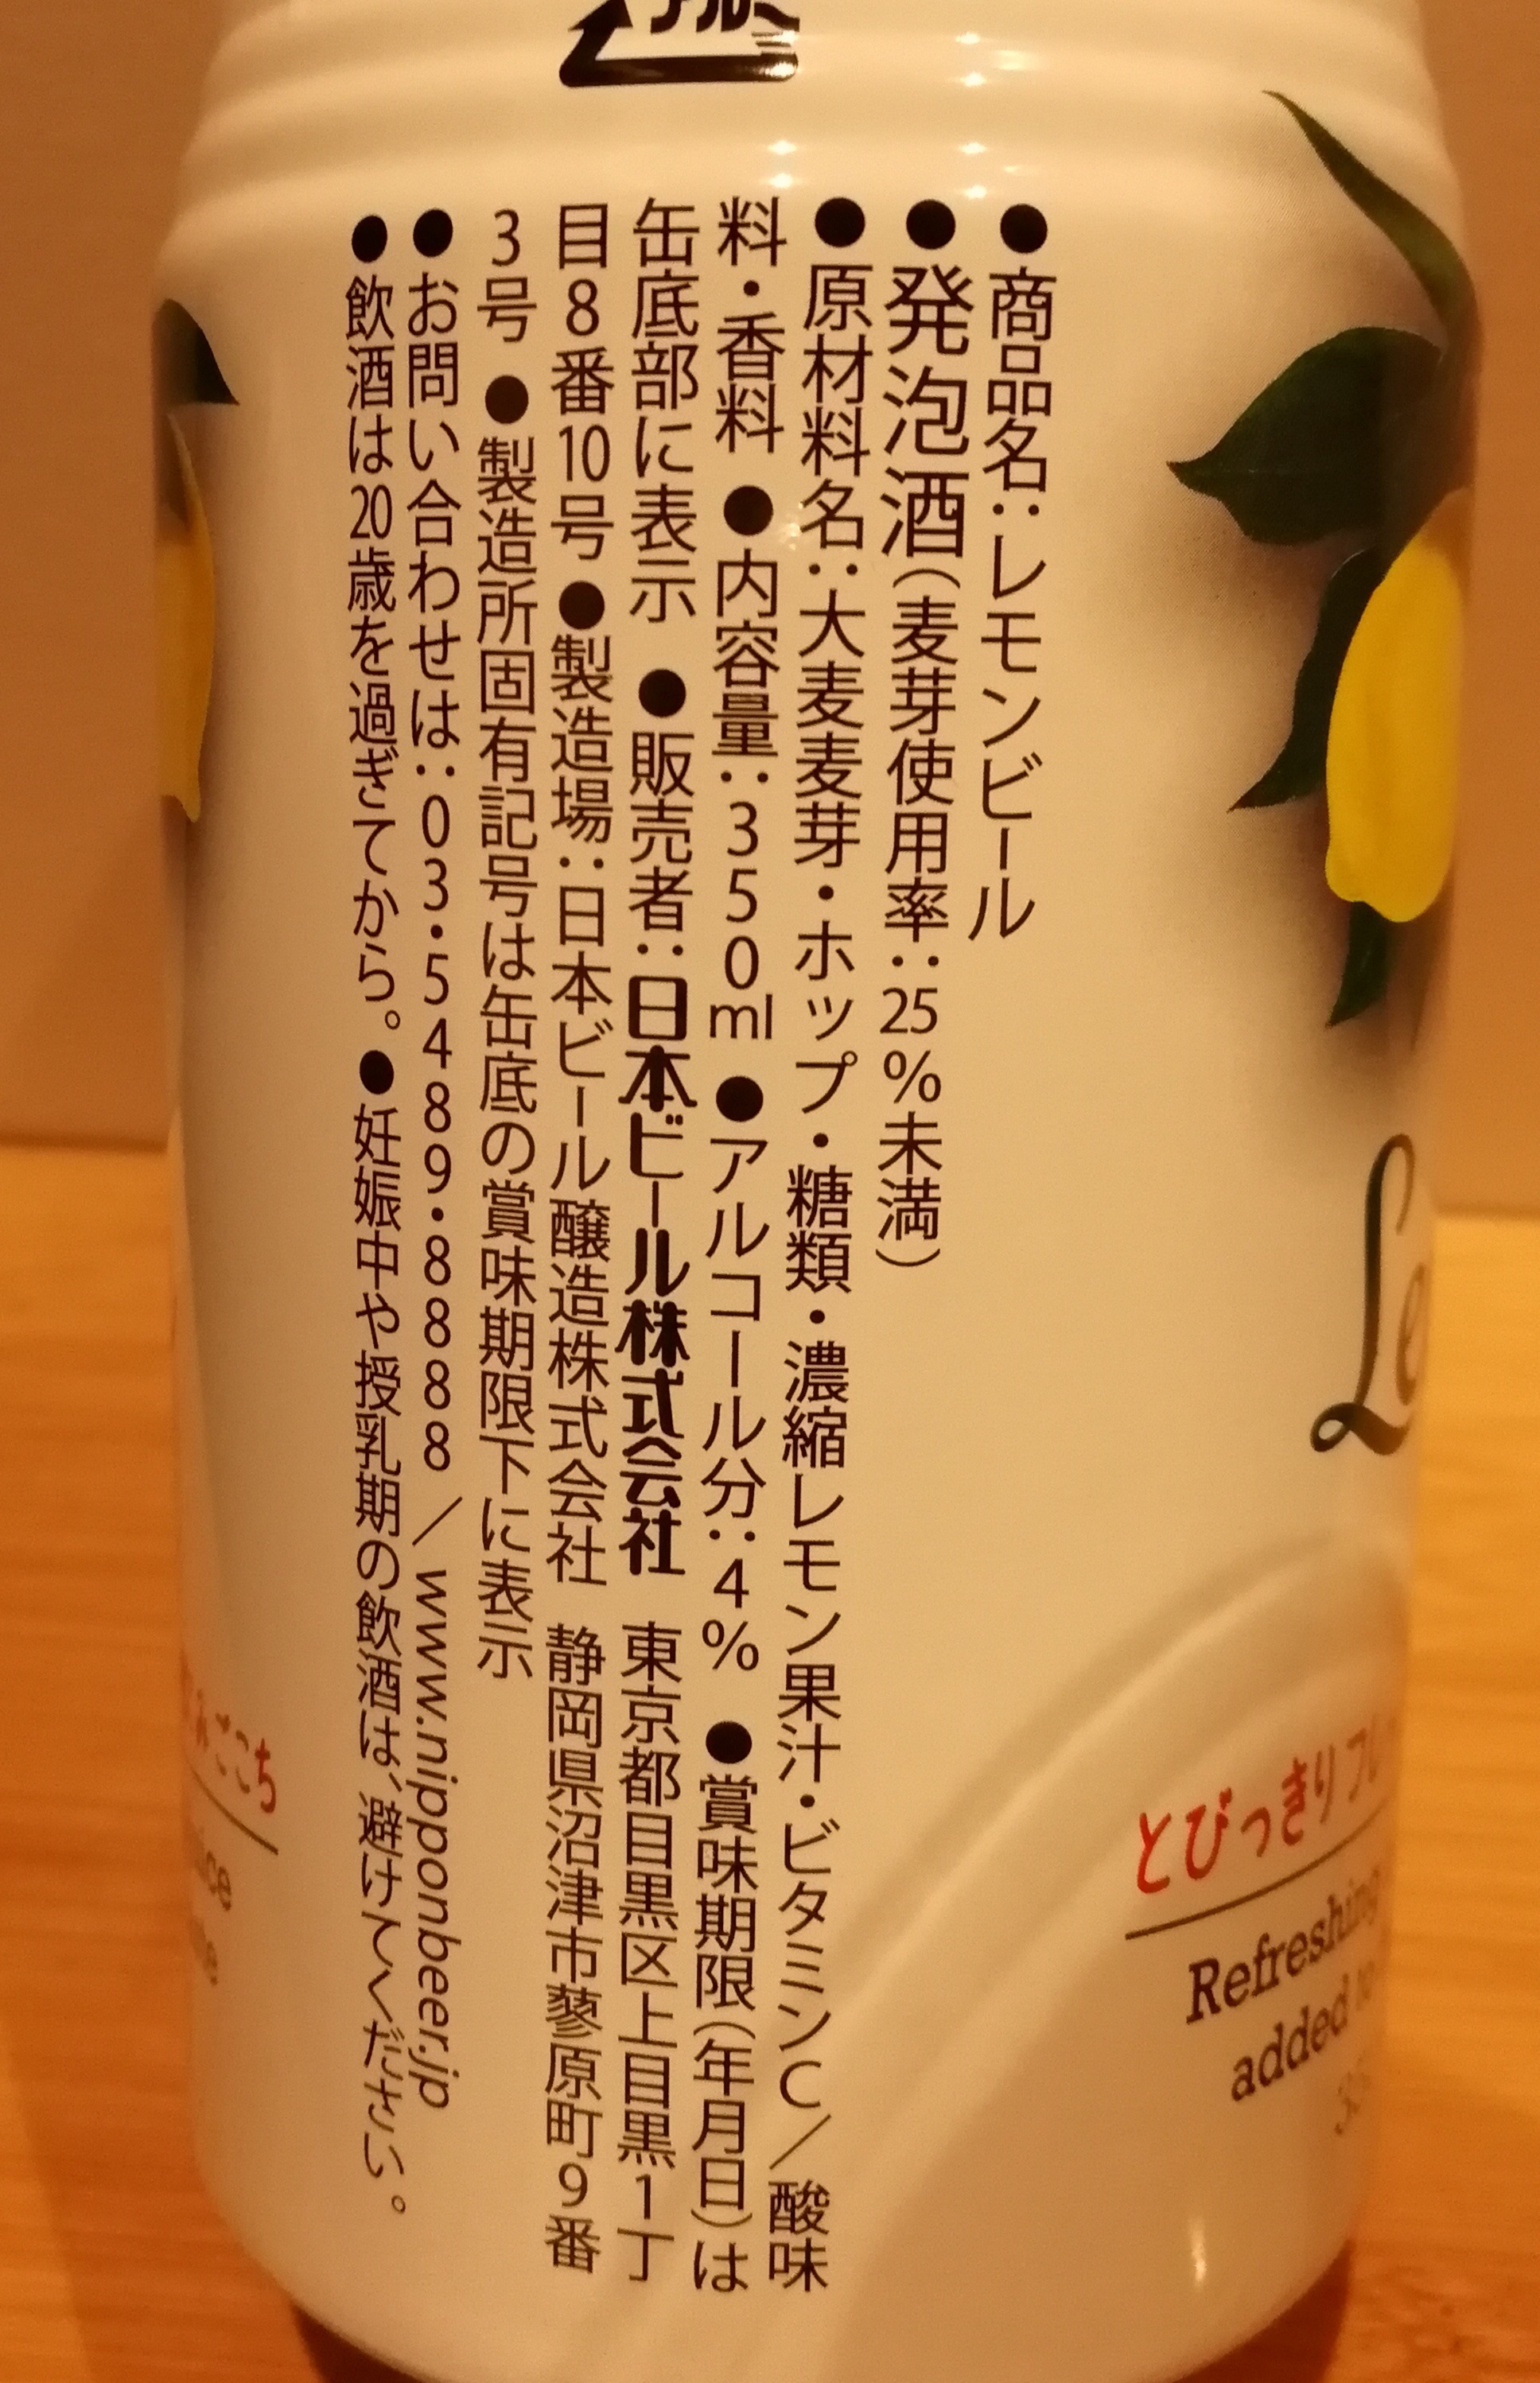 静岡,日本ビール醸造株式会社,Lemonbeer,レモンビール